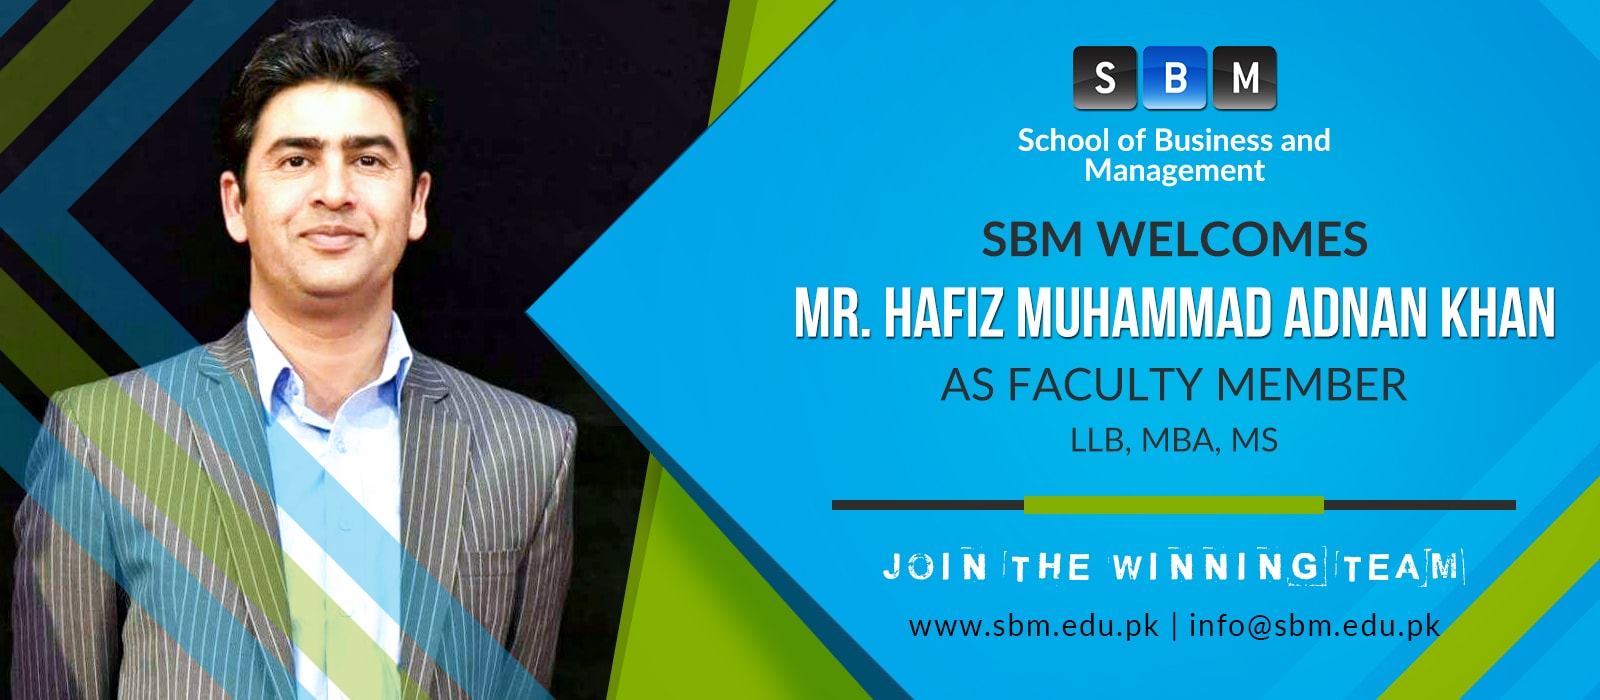 Mr Hafiz Muhammad Adnan Khan has joined SBM as Faculty Member